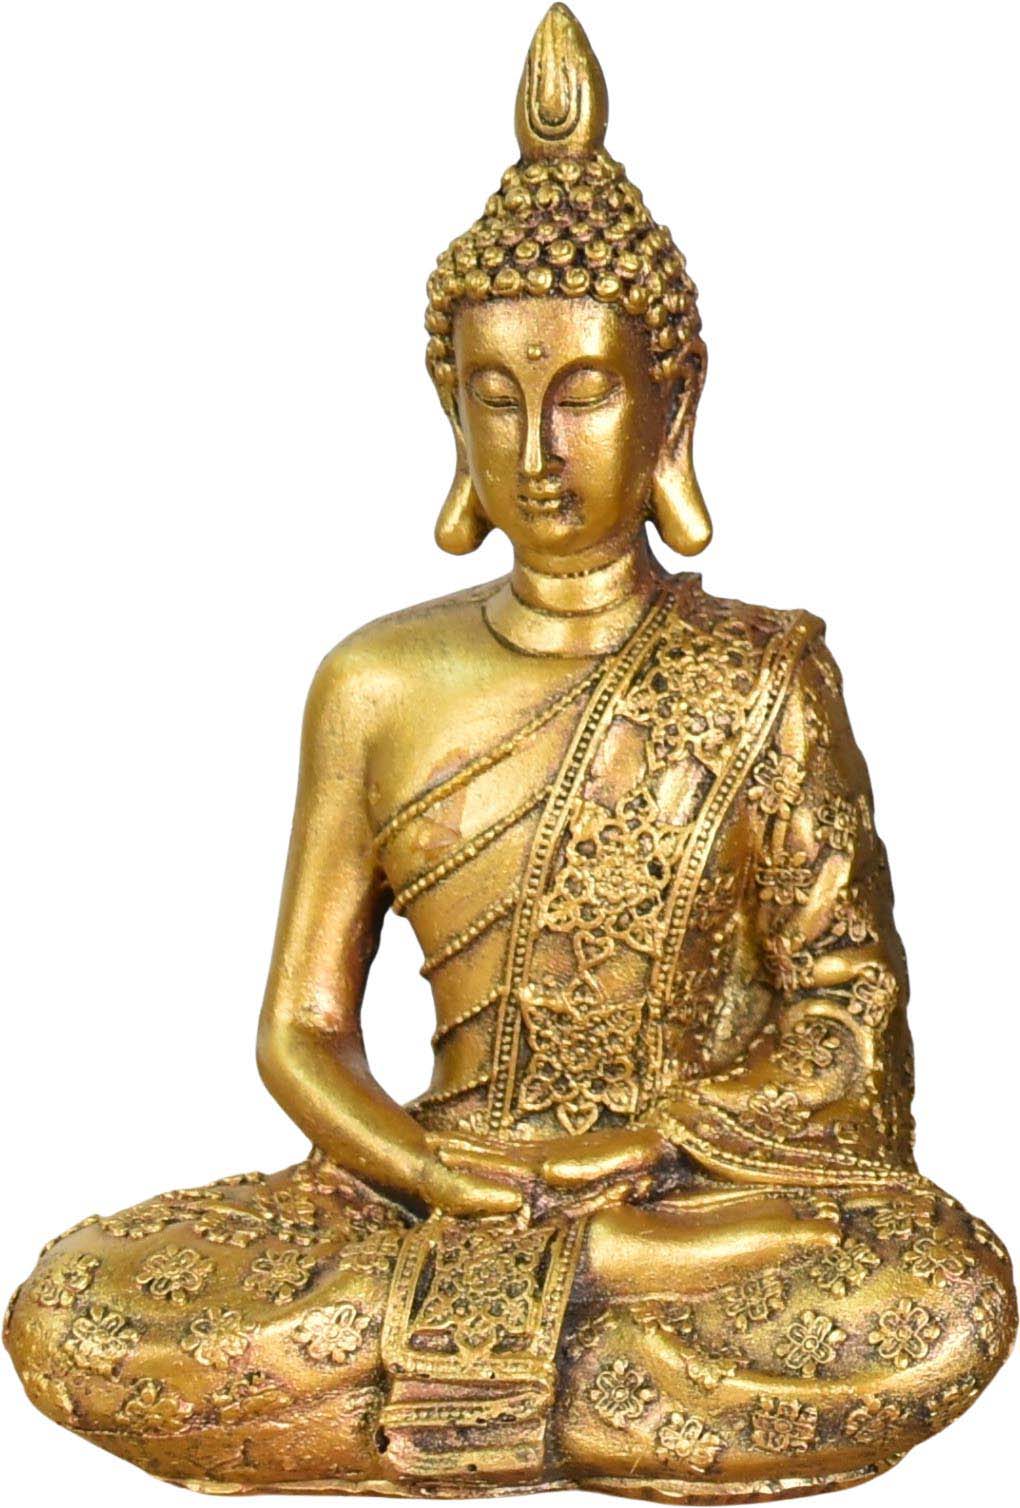 Bouddha : 1 656 782 images, photos de stock, objets 3D et images